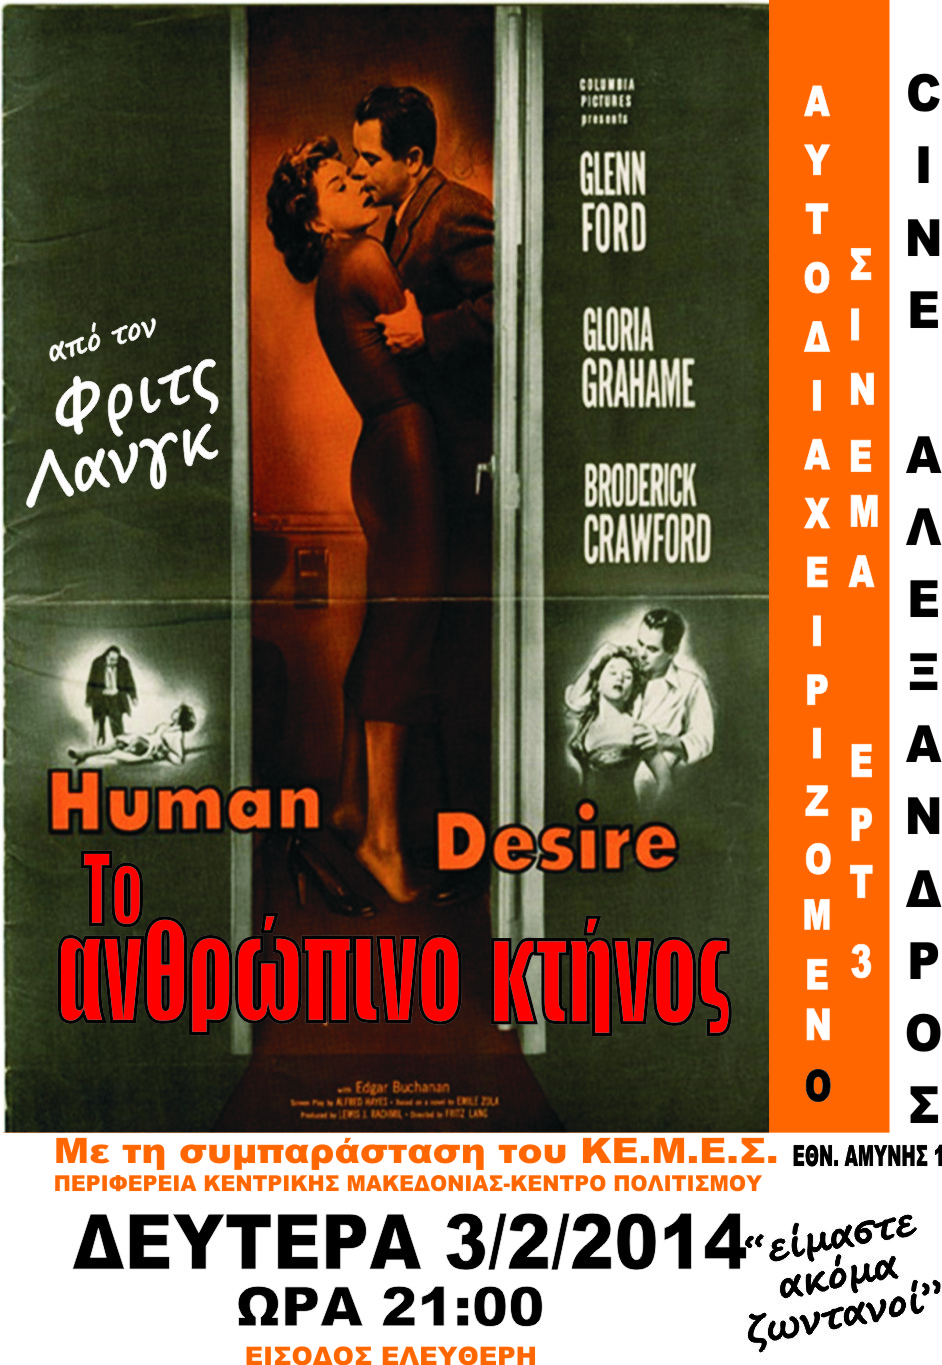 «Το ανθρώπινο κτήνος» από την Ταινιοθήκη της ΕΡΤ3